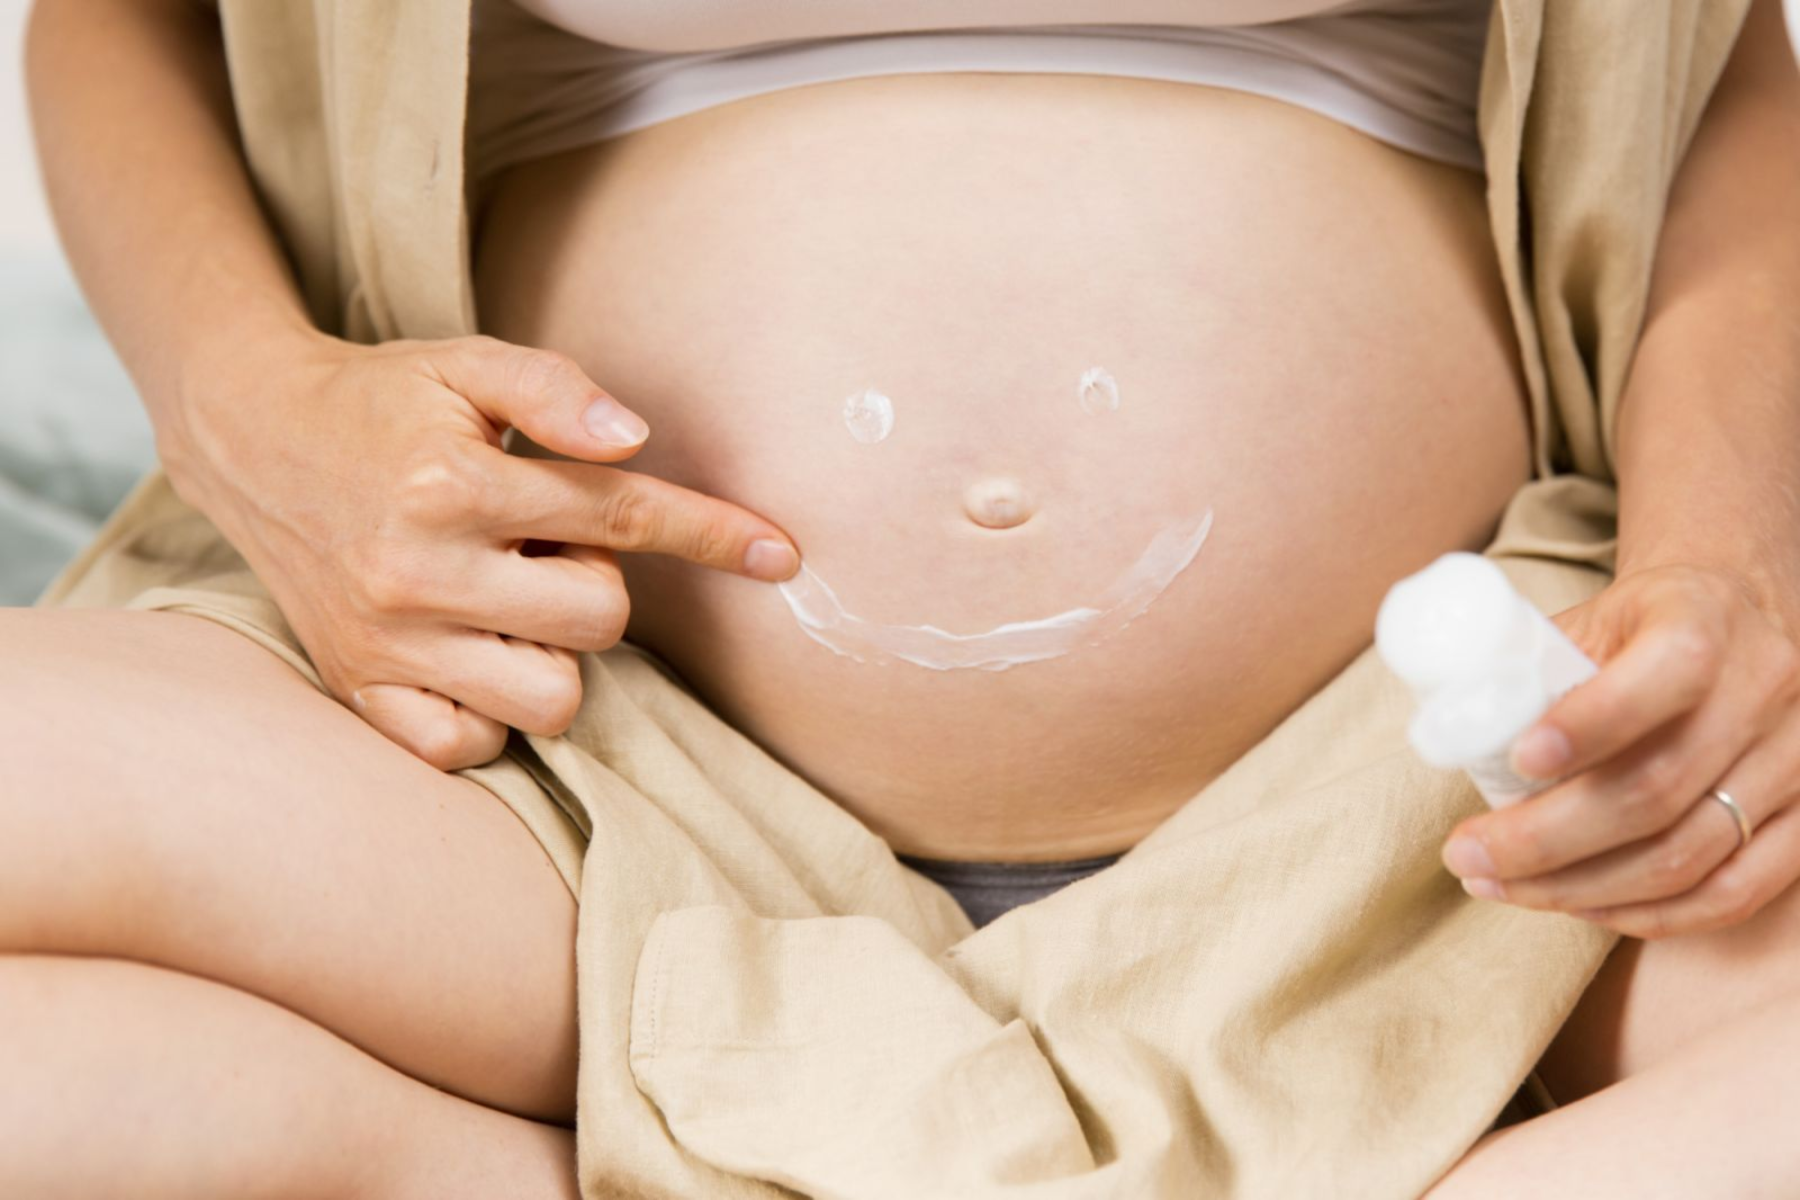 Kυτταρίτιδα εγκυμοσύνη: Πώς να εξαφανίσετε την κυτταρίτιδα μετά την εγκυμοσύνη;